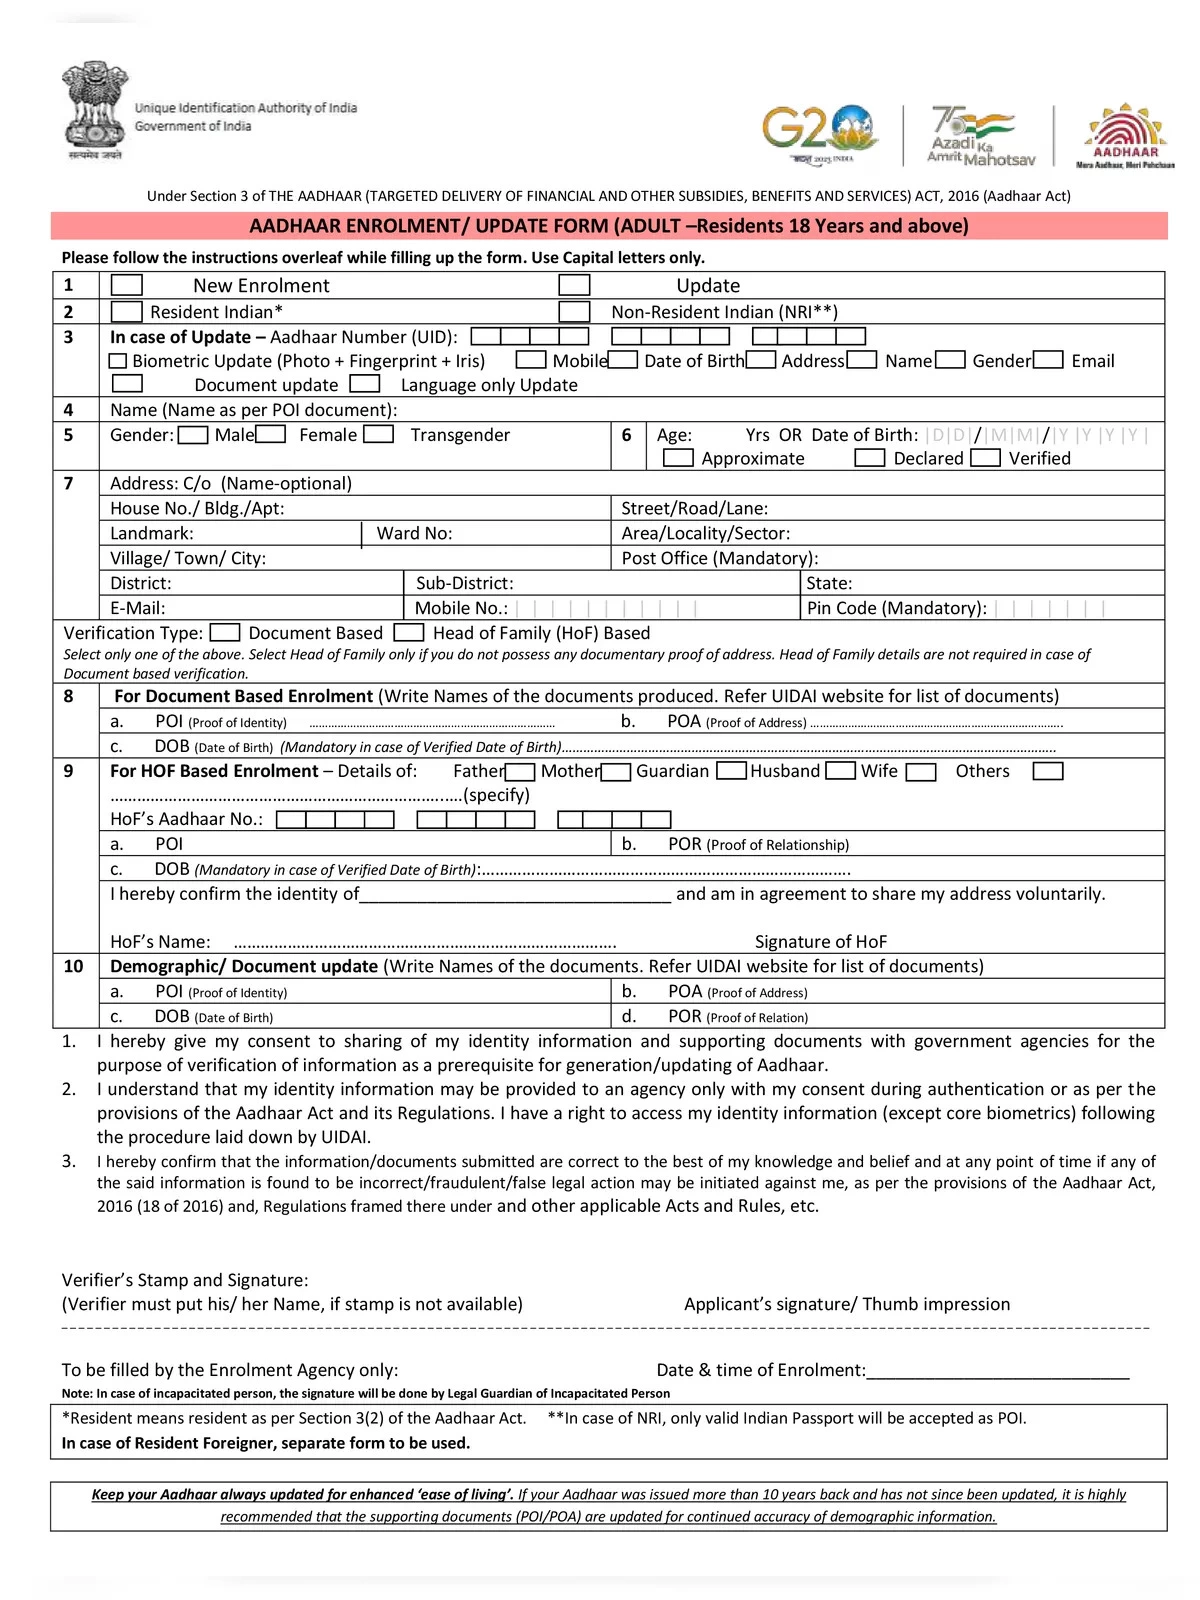 Aadhaar Card Address Change Form (Aadhar Update Form)